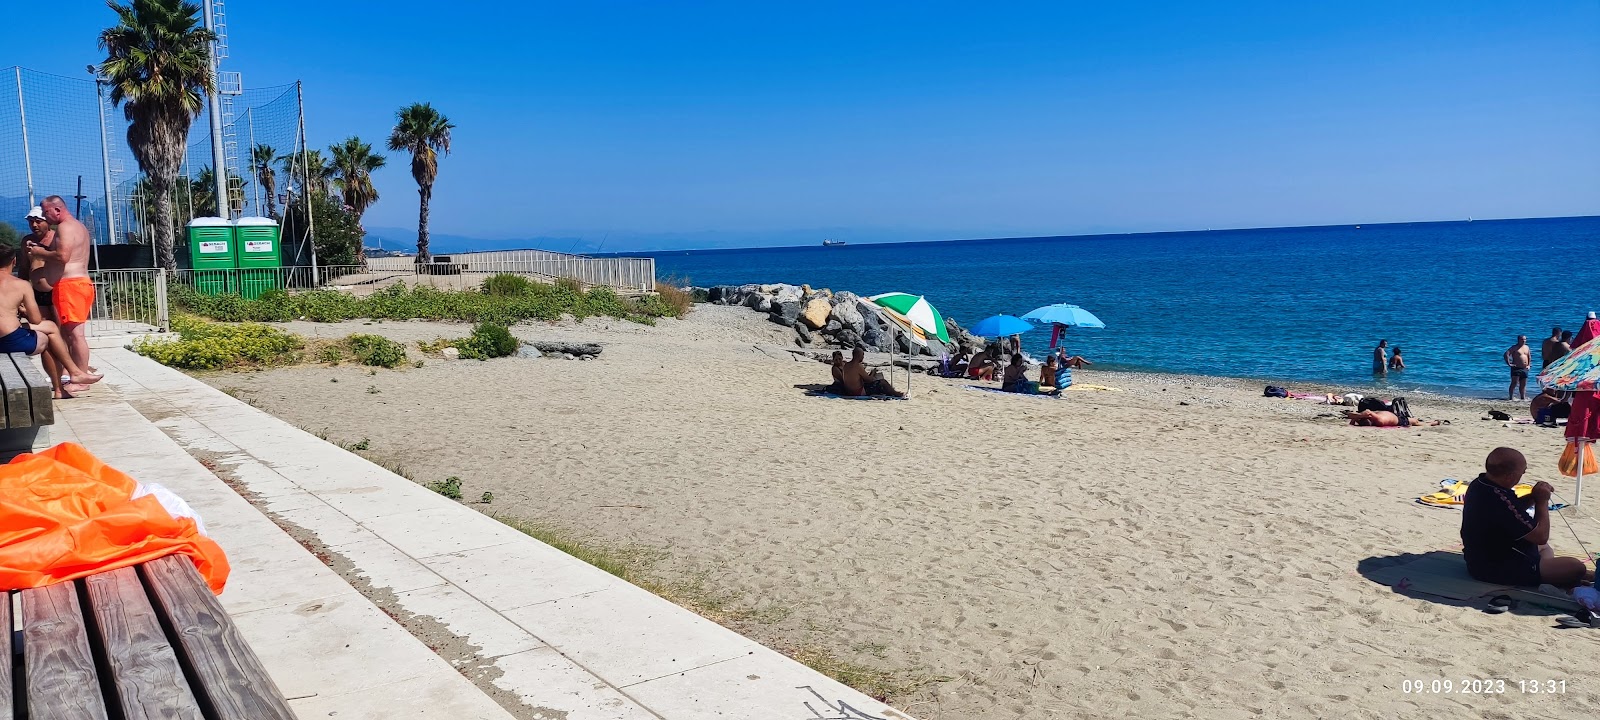 Foto de Spiaggia di Zinola con muy limpio nivel de limpieza